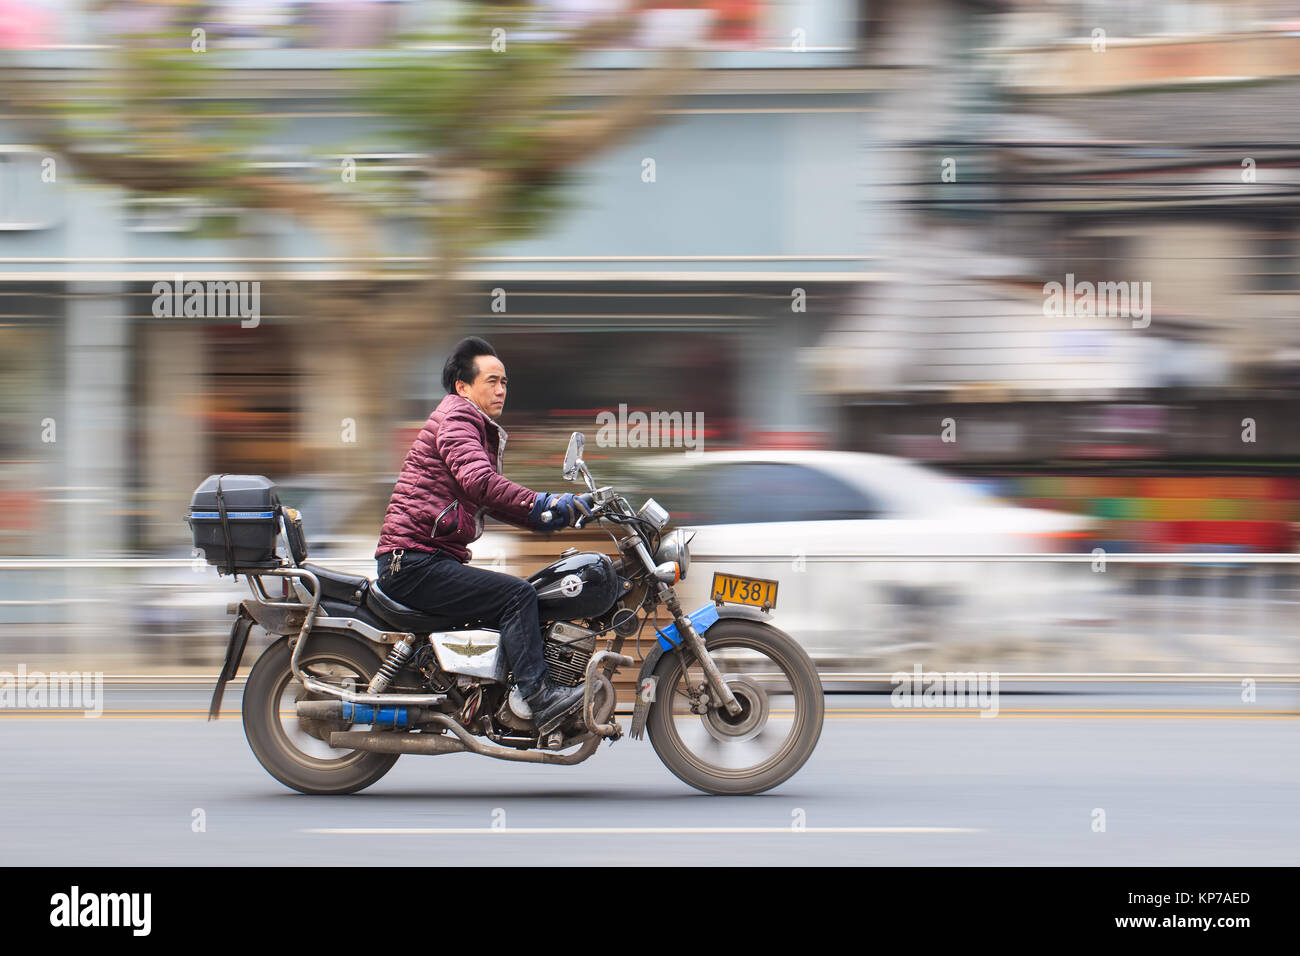 YIWU - CHINA - JAN. 15., 2016. Chinesischer Mann auf dem Motorrad auf die Geschwindigkeit aus. Große Städte wie Peking und Guangzhou, verboten Motorräder von städtischen Gebieten. Stockfoto